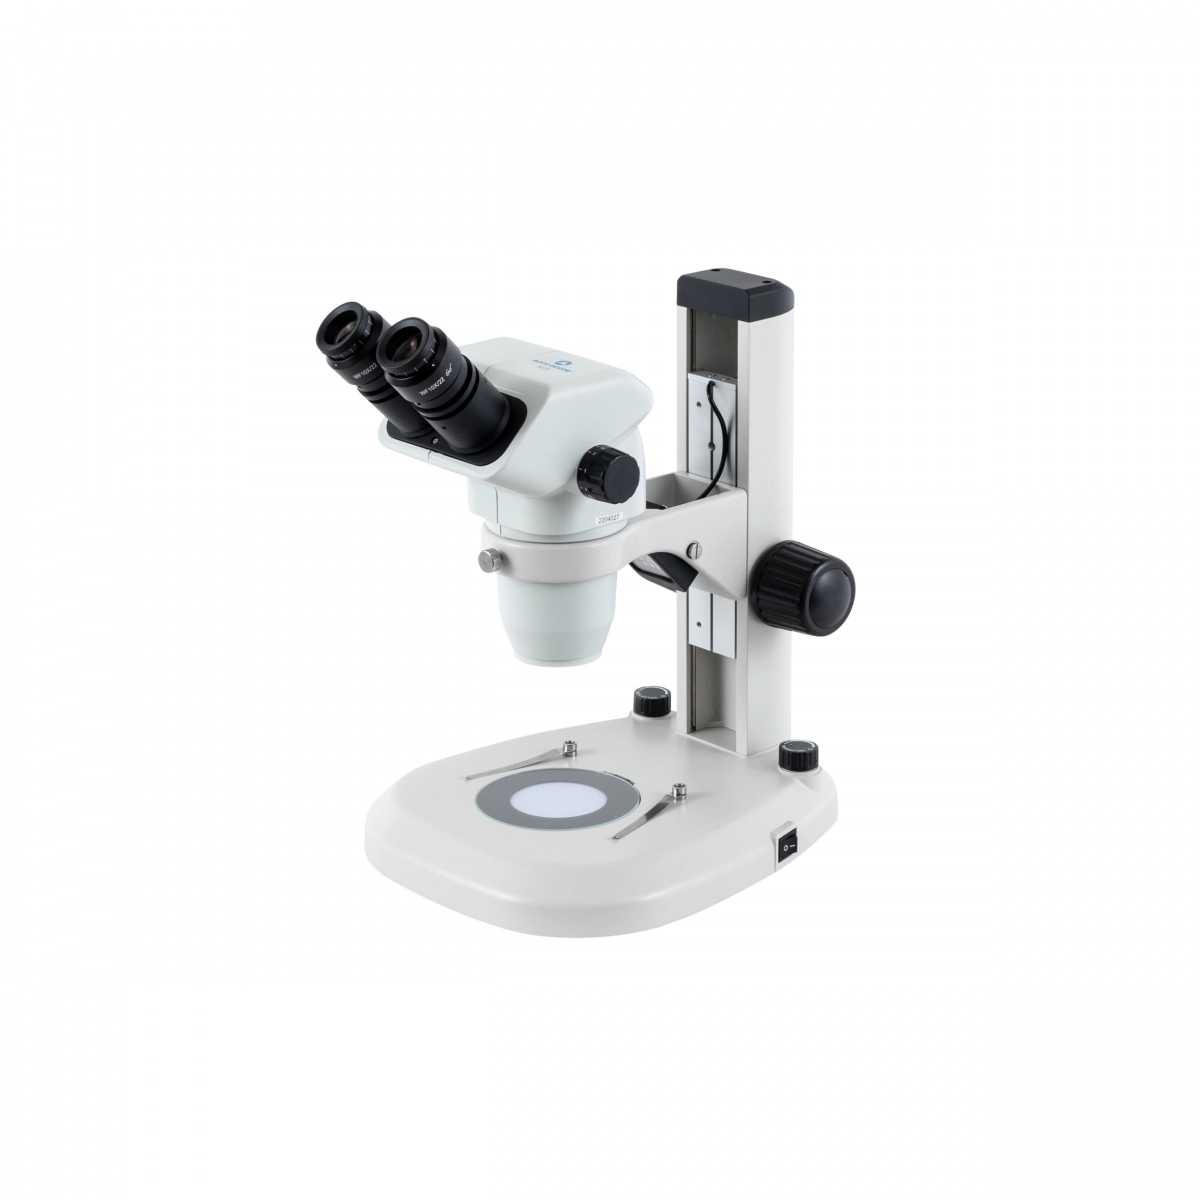 Accu-Scope 3075 Binocular Zoom Stereo Microscope on LED Stand